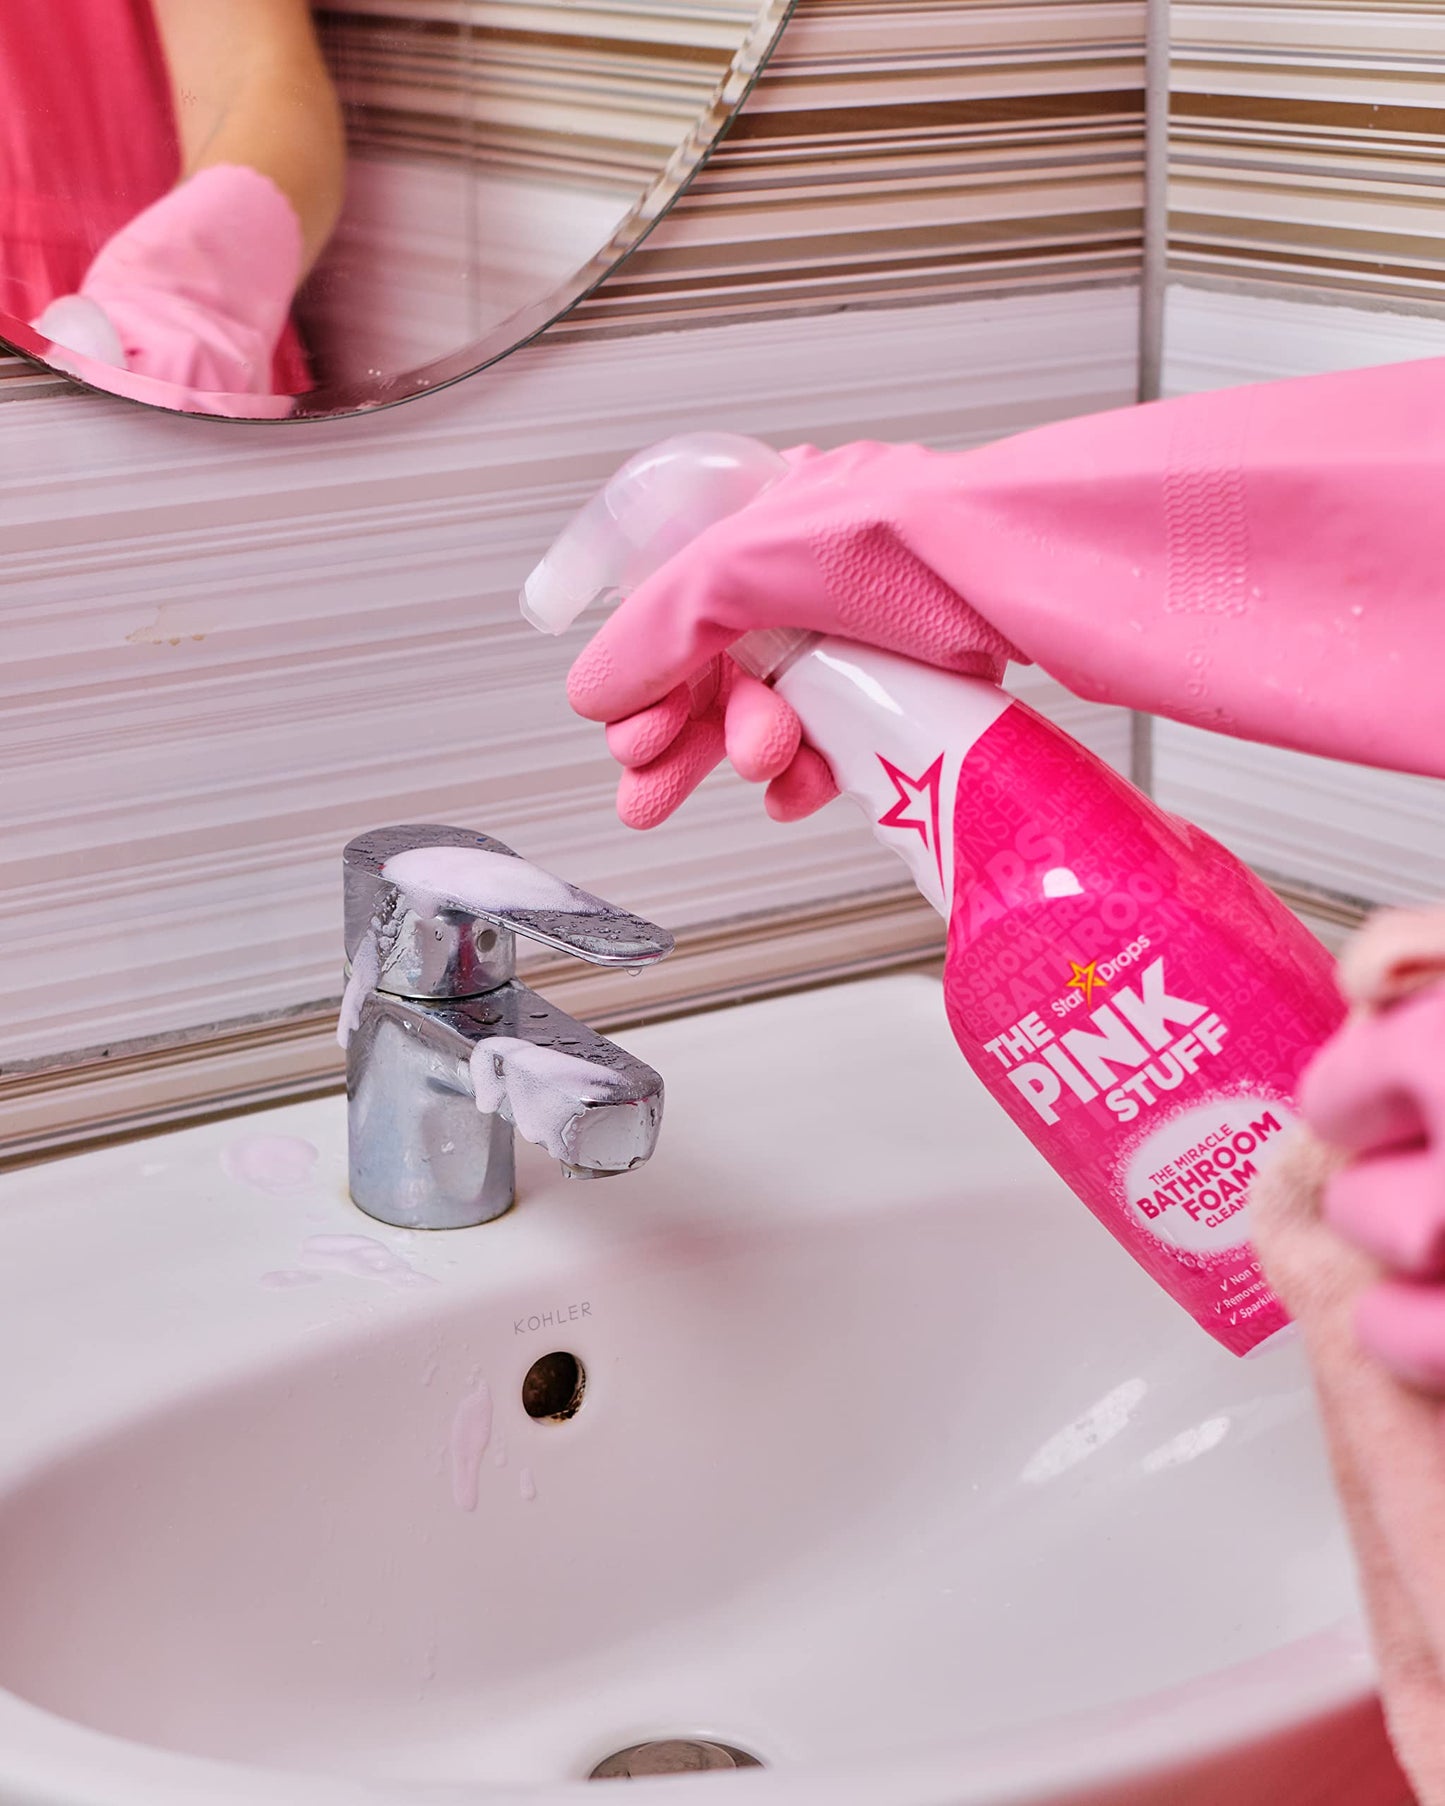 Stardrops The Pink Stuff – Badezimmerschaum – Badezimmerreinigungsprodukt